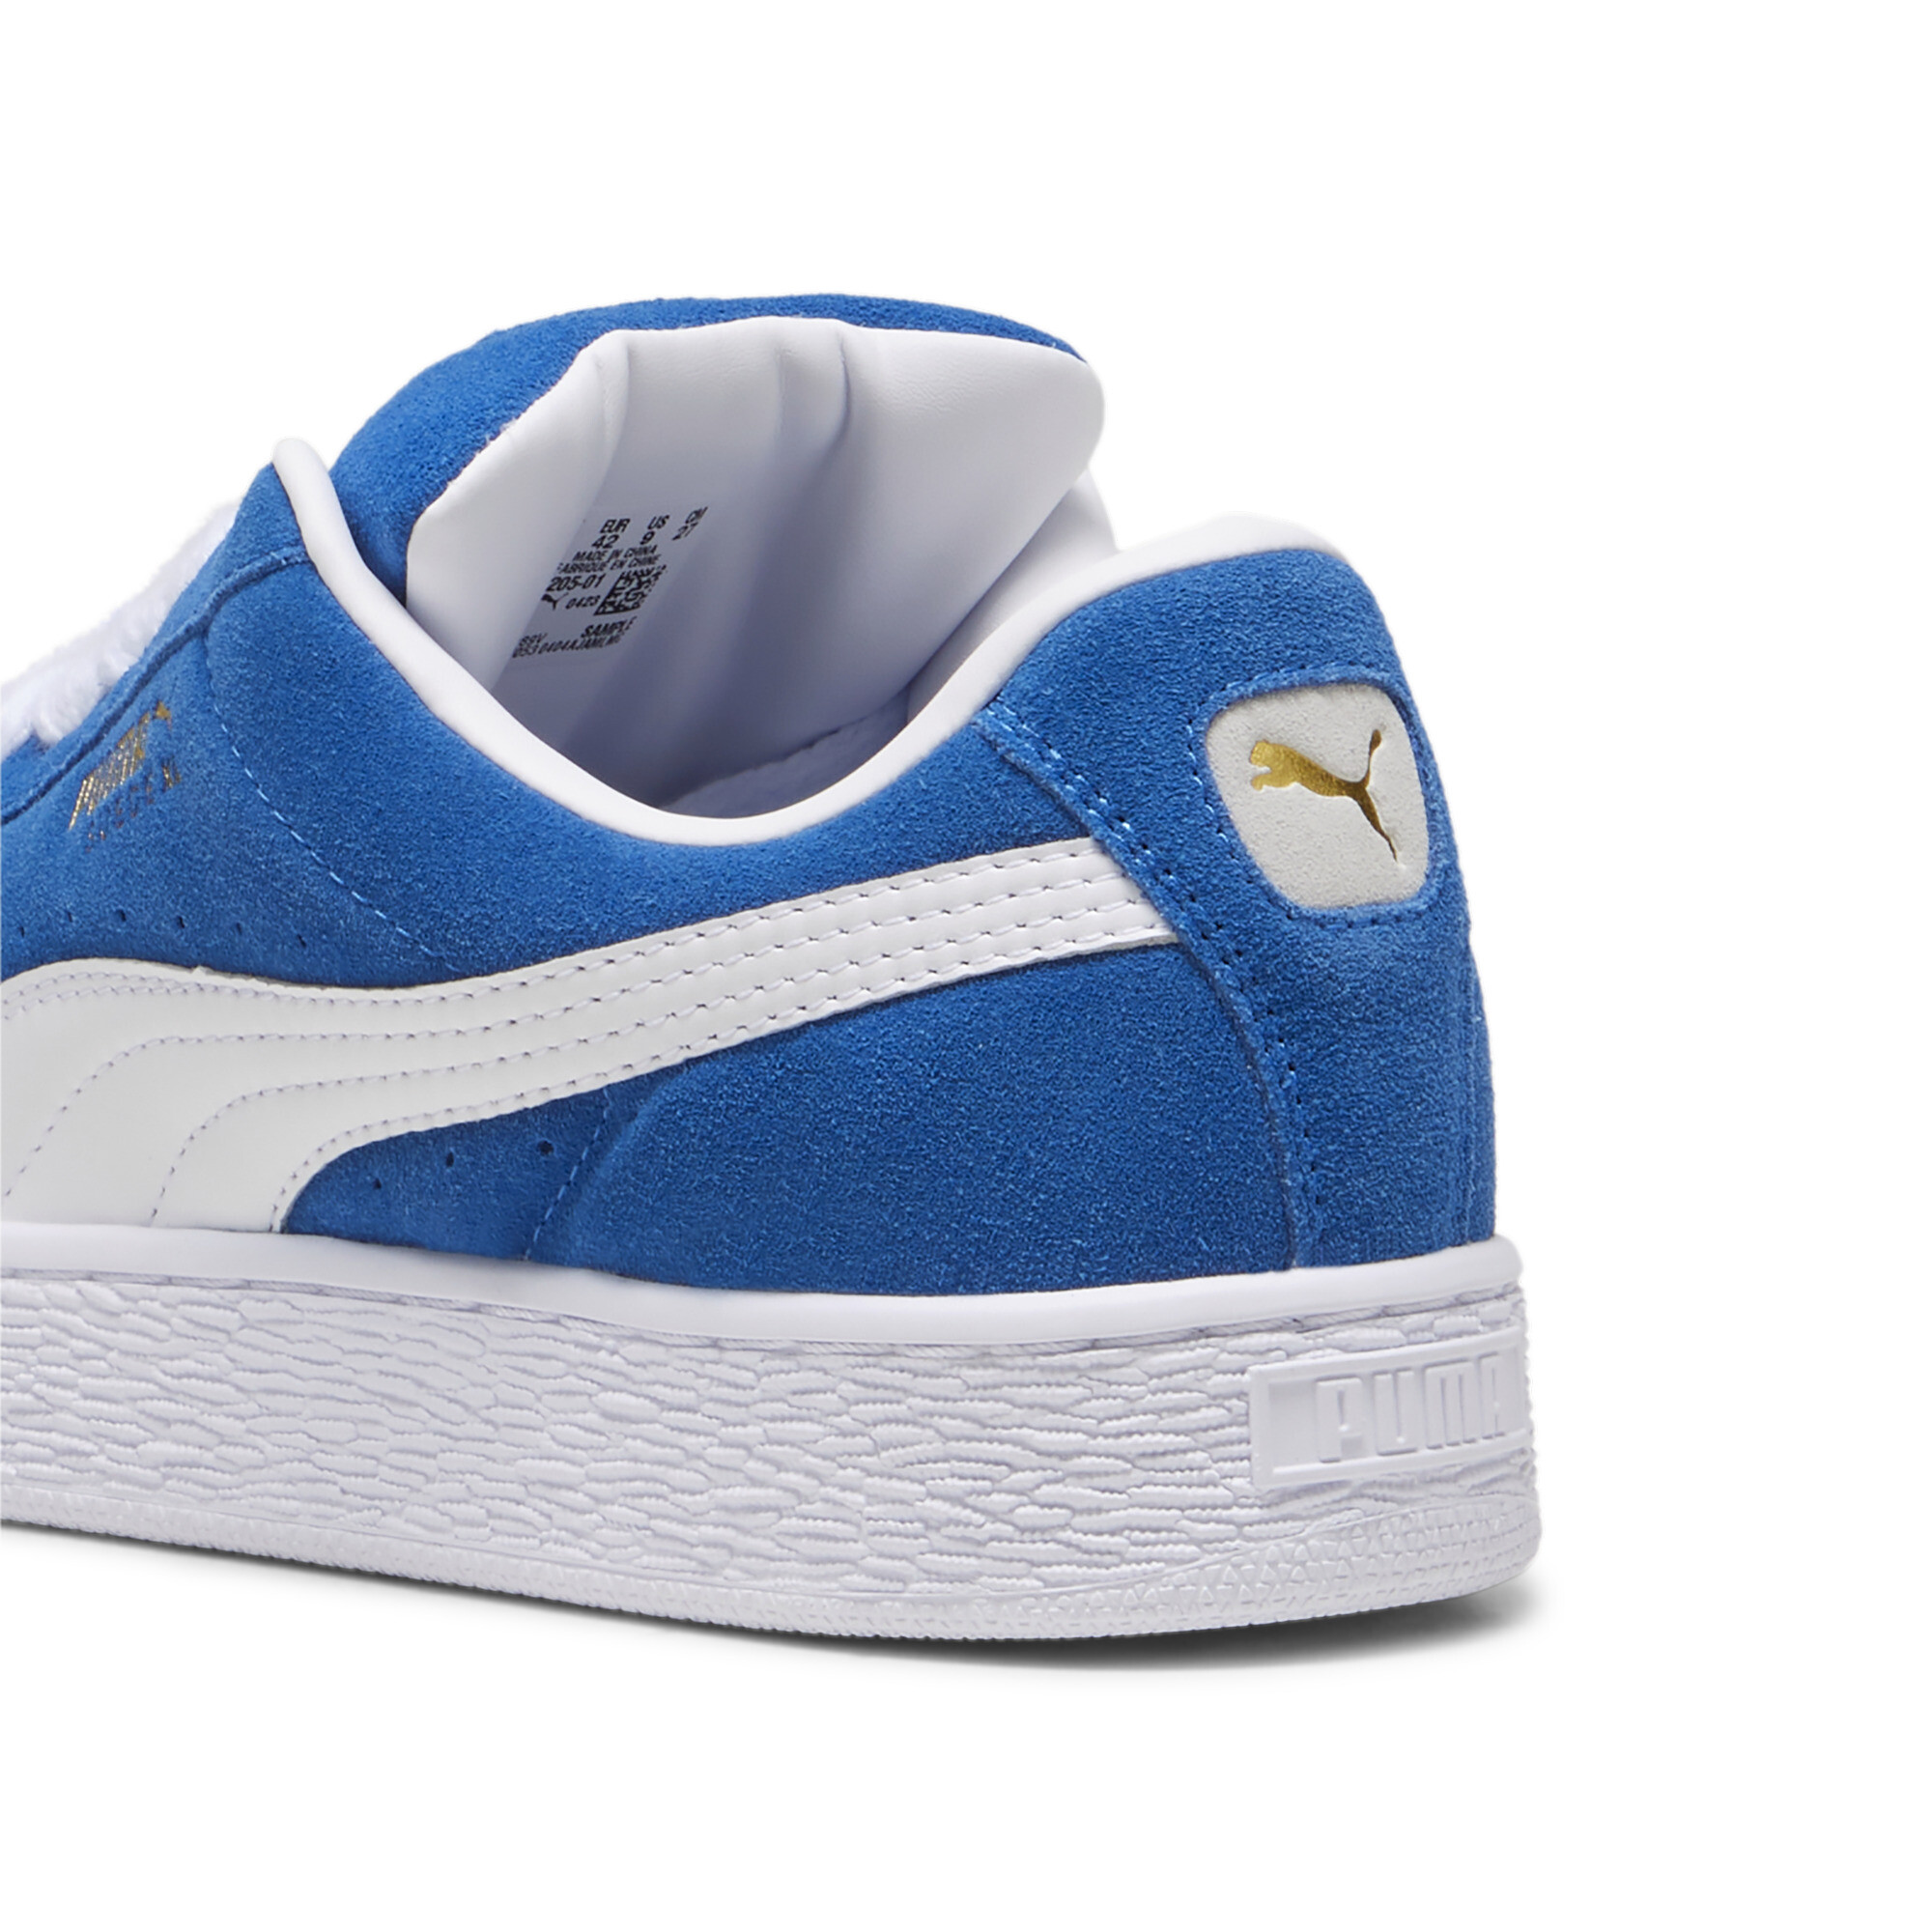 Puma Suede XL Sneakers Unisex, Blue, Size 48, Shoes